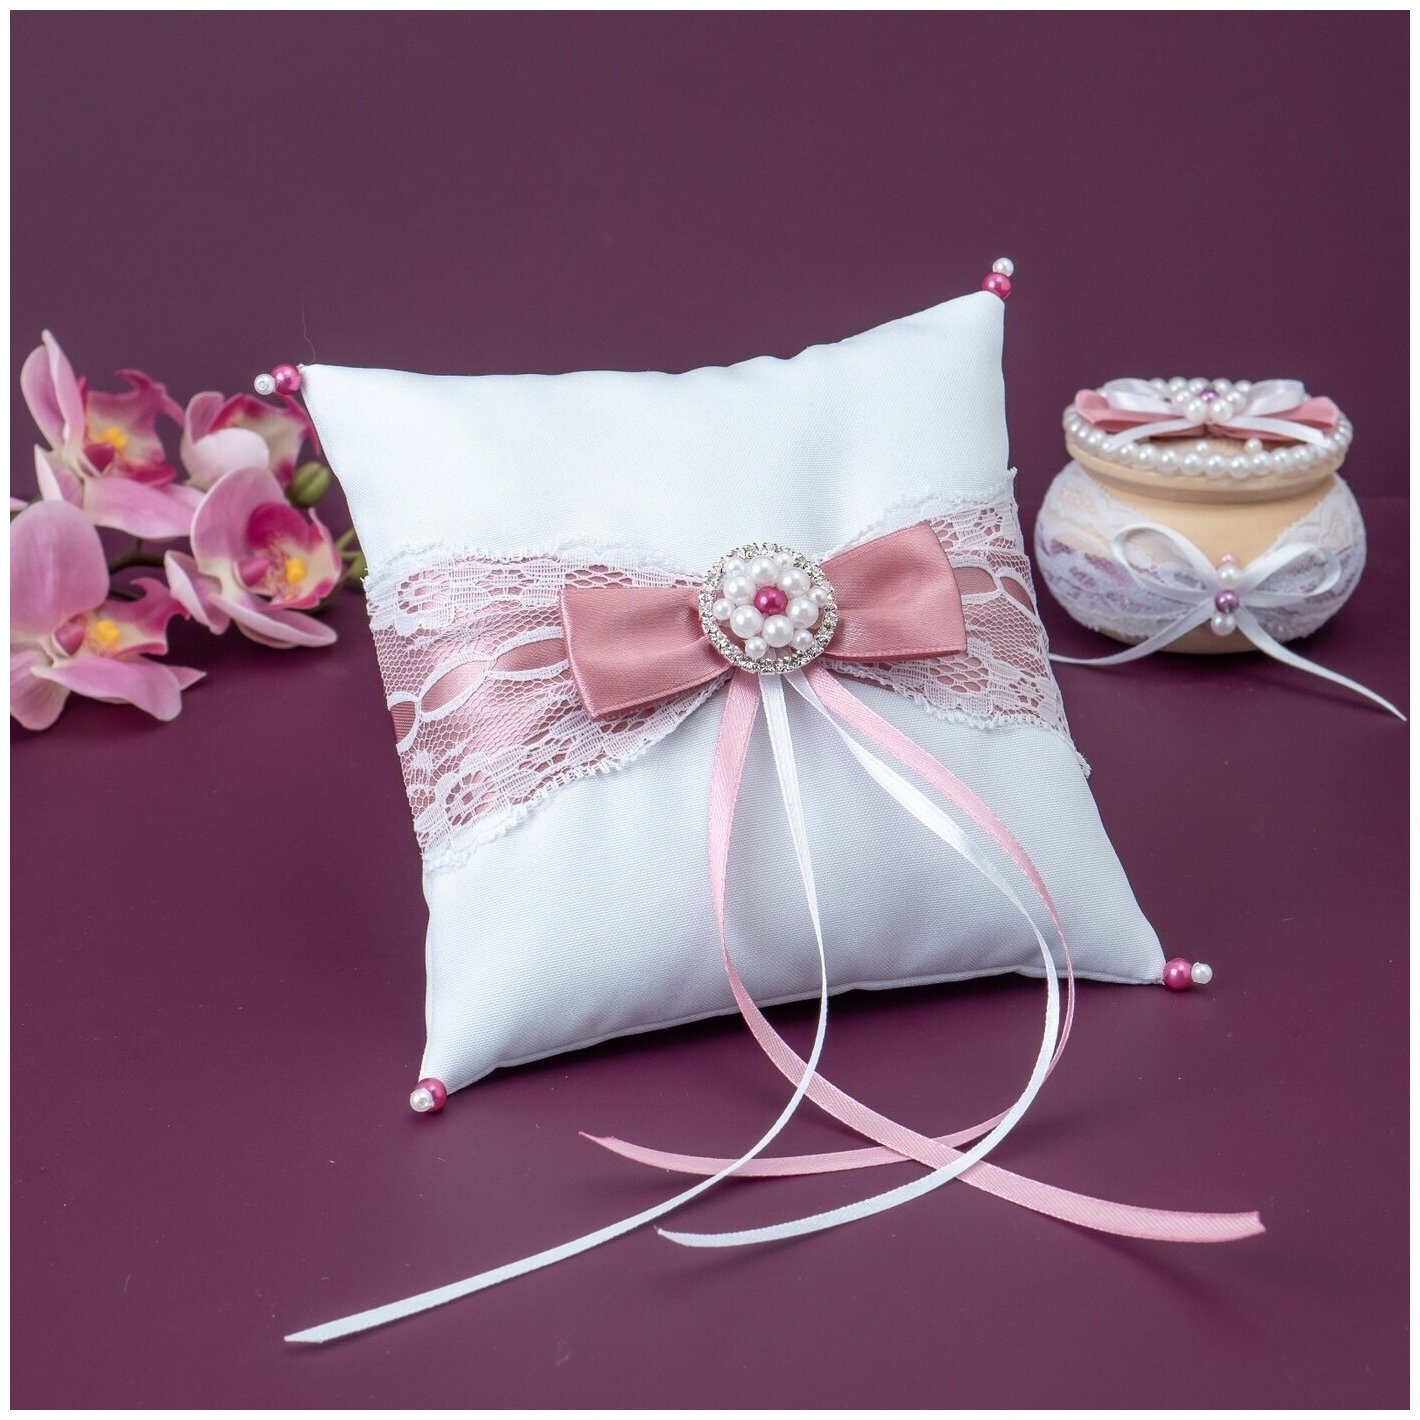 Роскошная подушечка для обручальных колец на свадьбу "Анжелика" из белого атласа с розовыми лентами, белым кружевом и брошью из жемчужных бусин